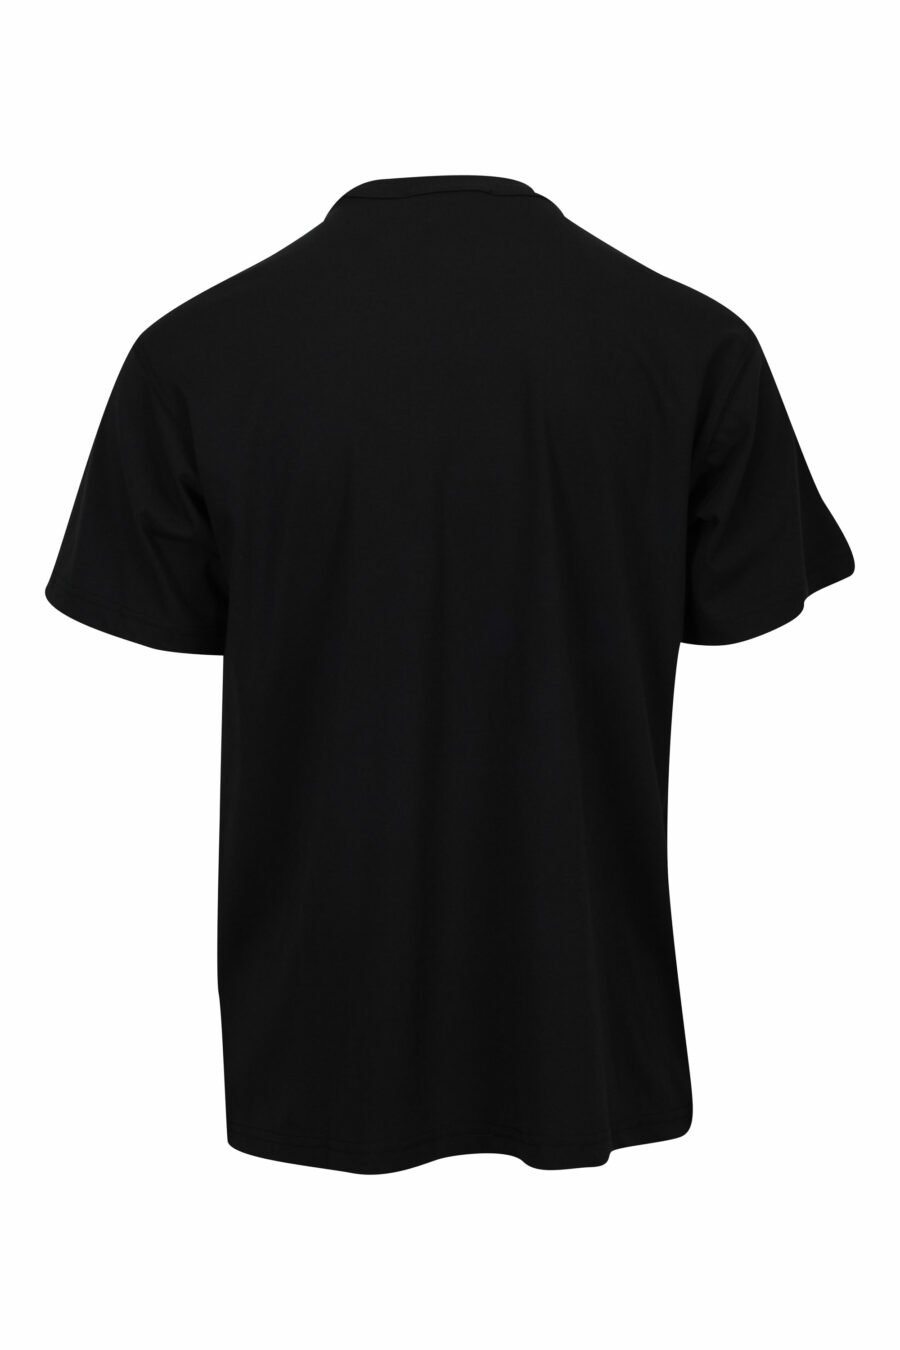 Camiseta negra con maxilogo circular blanco - 8052019580440 1